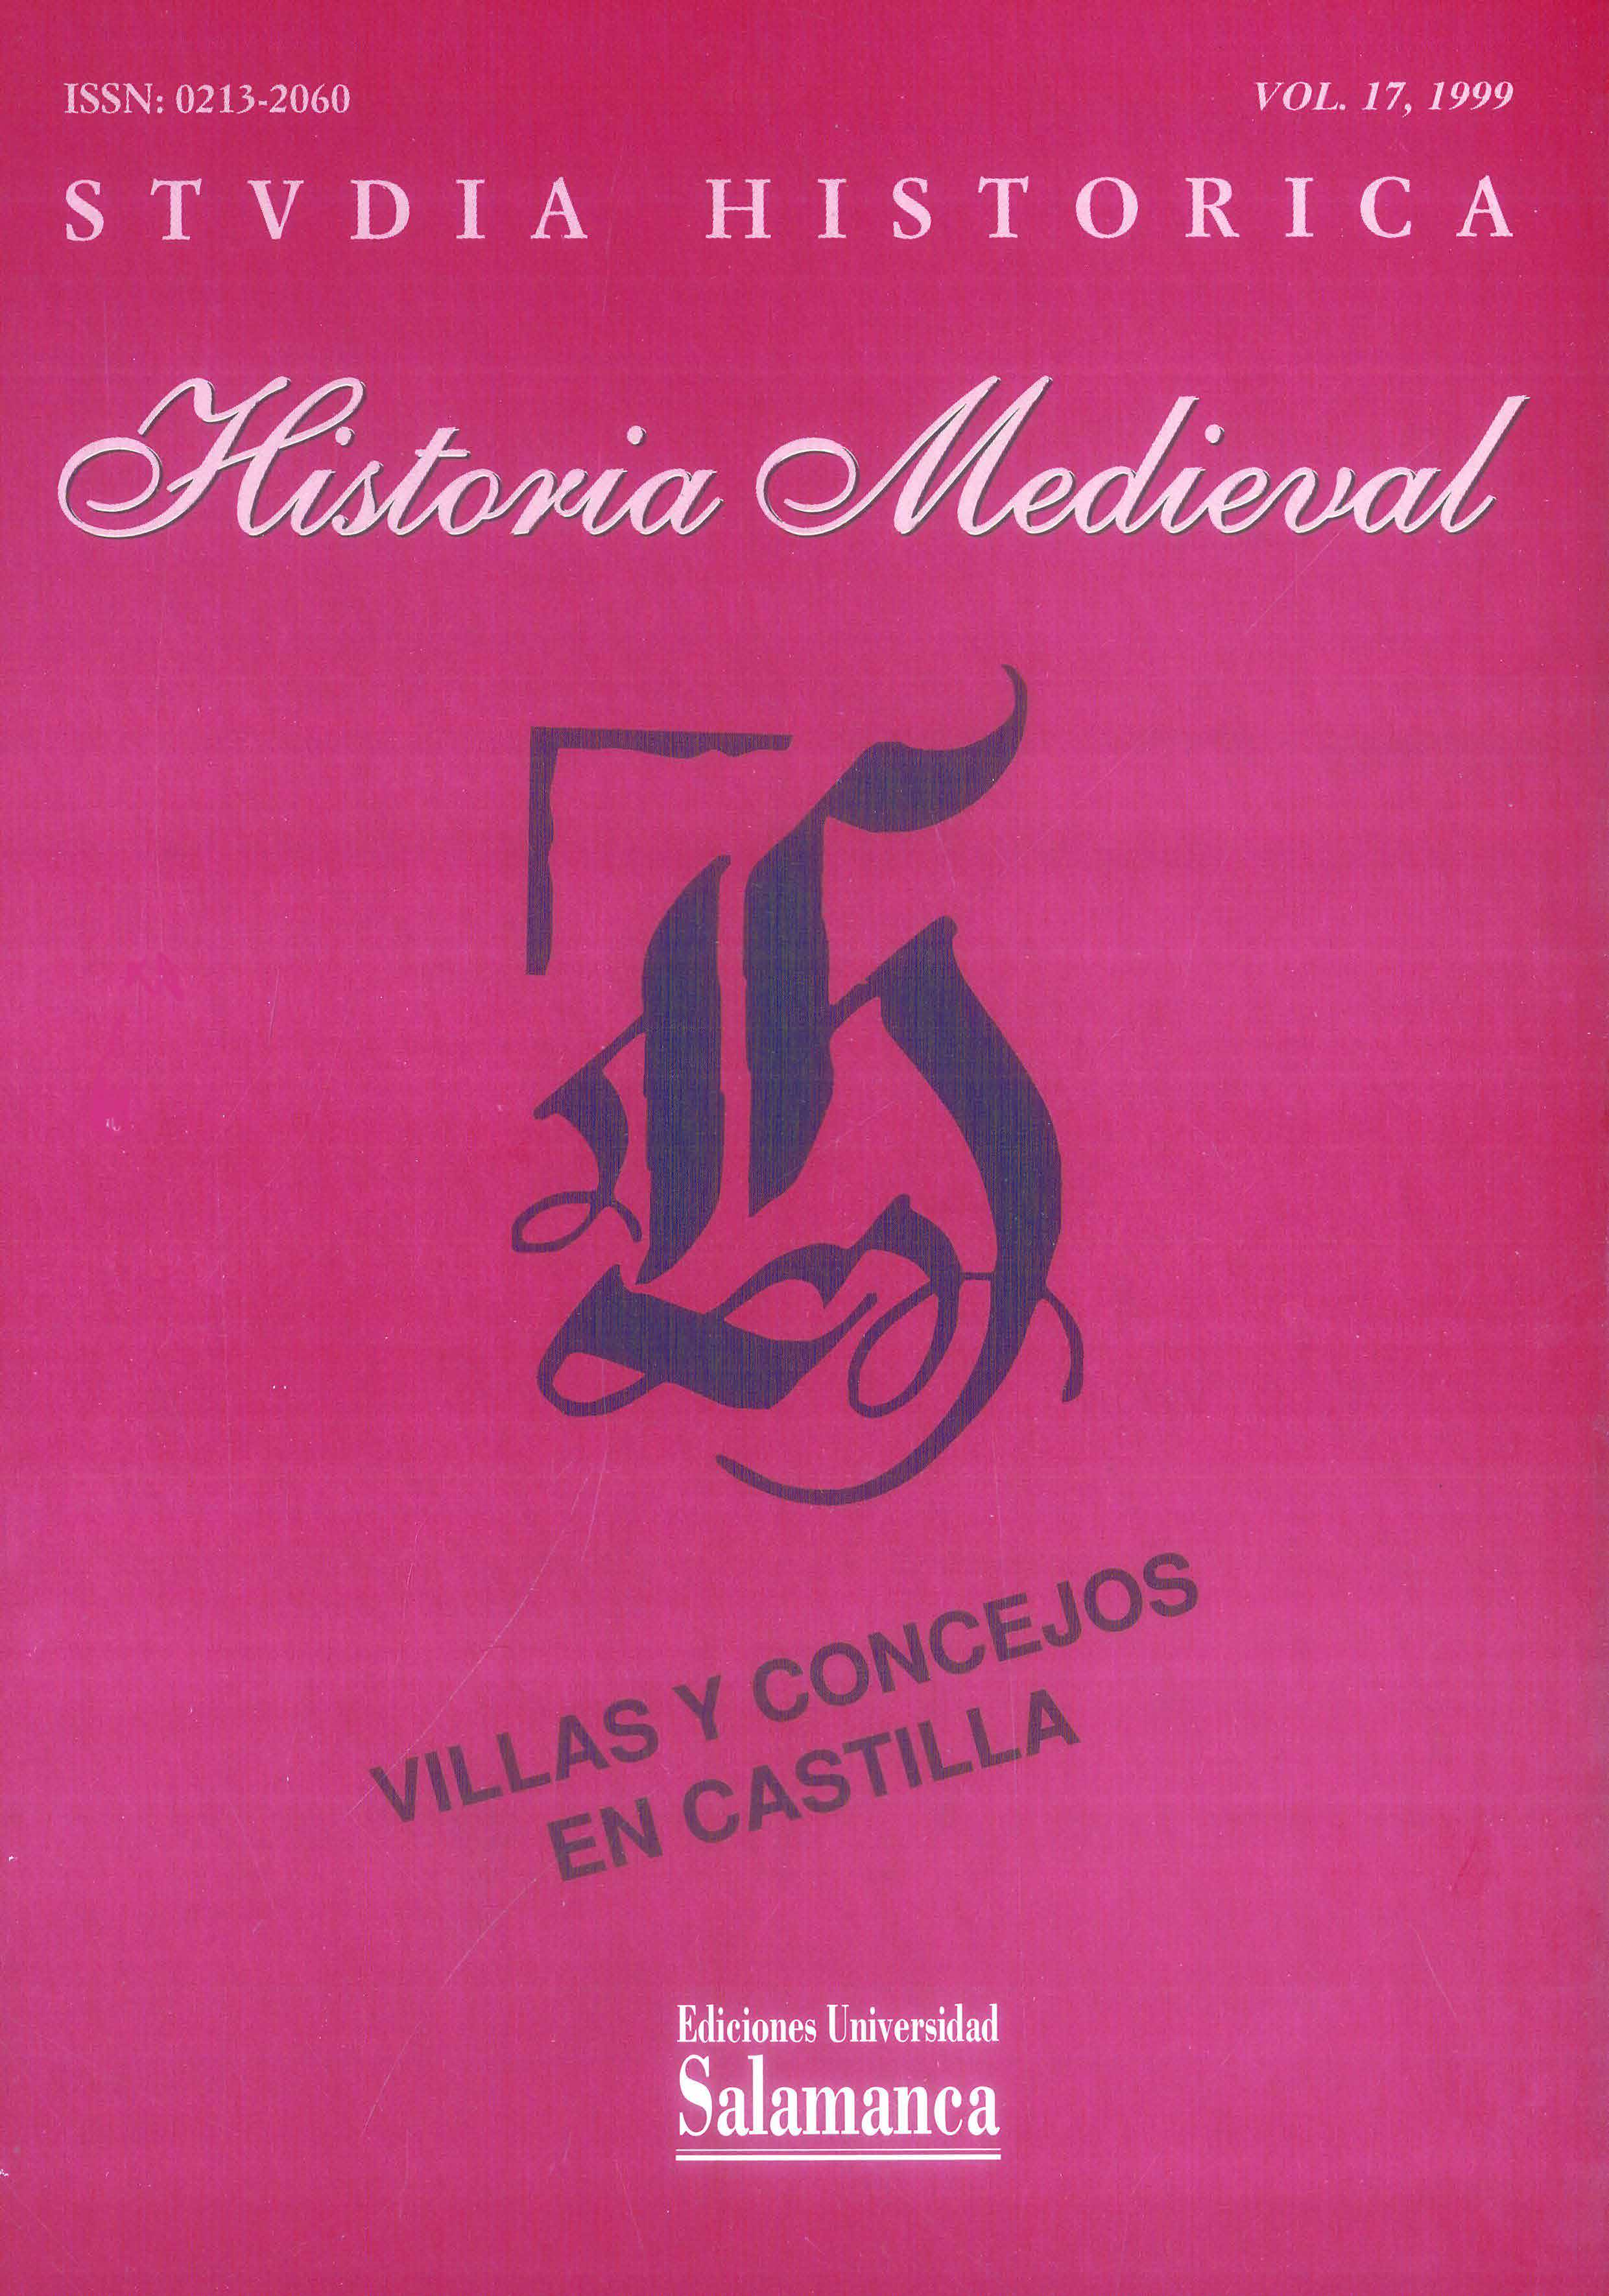                         Ver Vol. 17 (1999): Villas y concejos en Castilla
                    